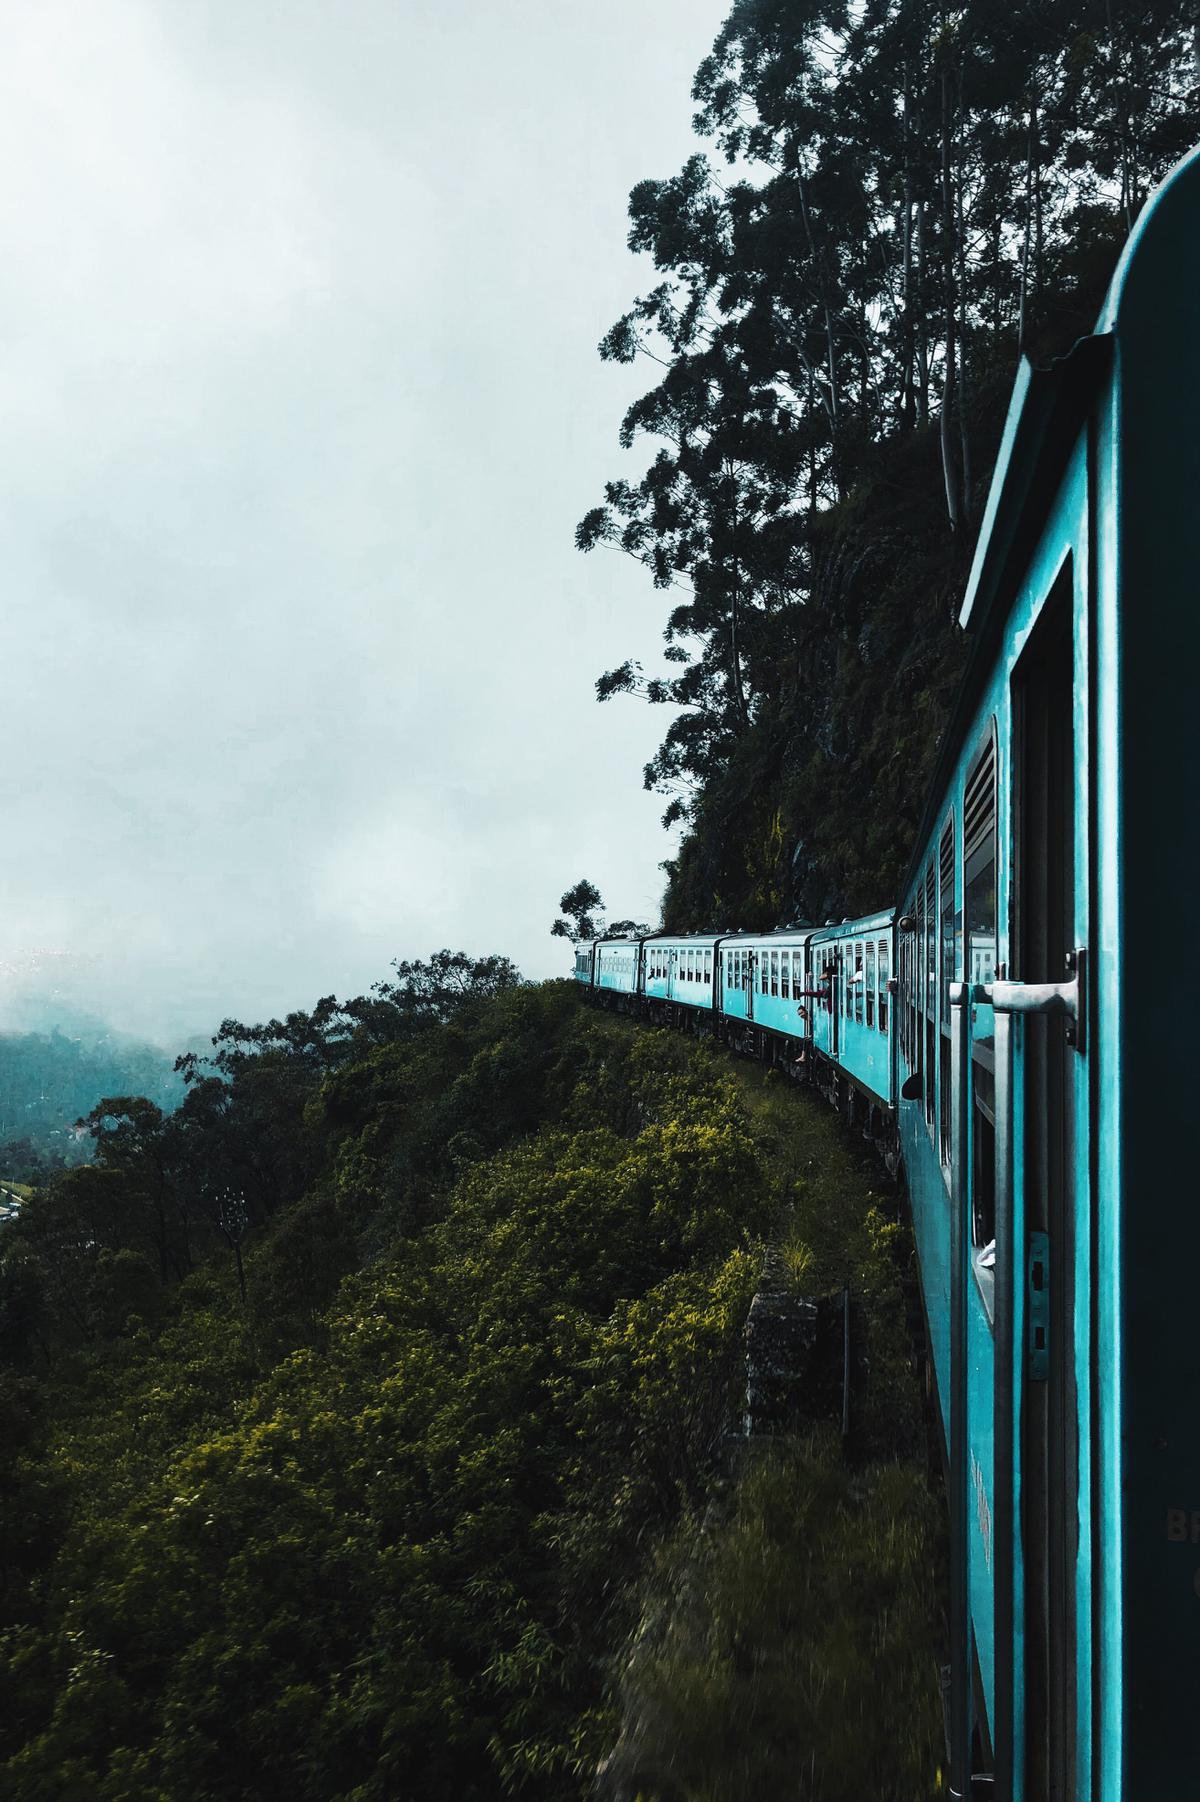 Viajar en tren | Puedes recorrer los rincones de México a bordo de uno de ellos
(Fuente: Pexels)